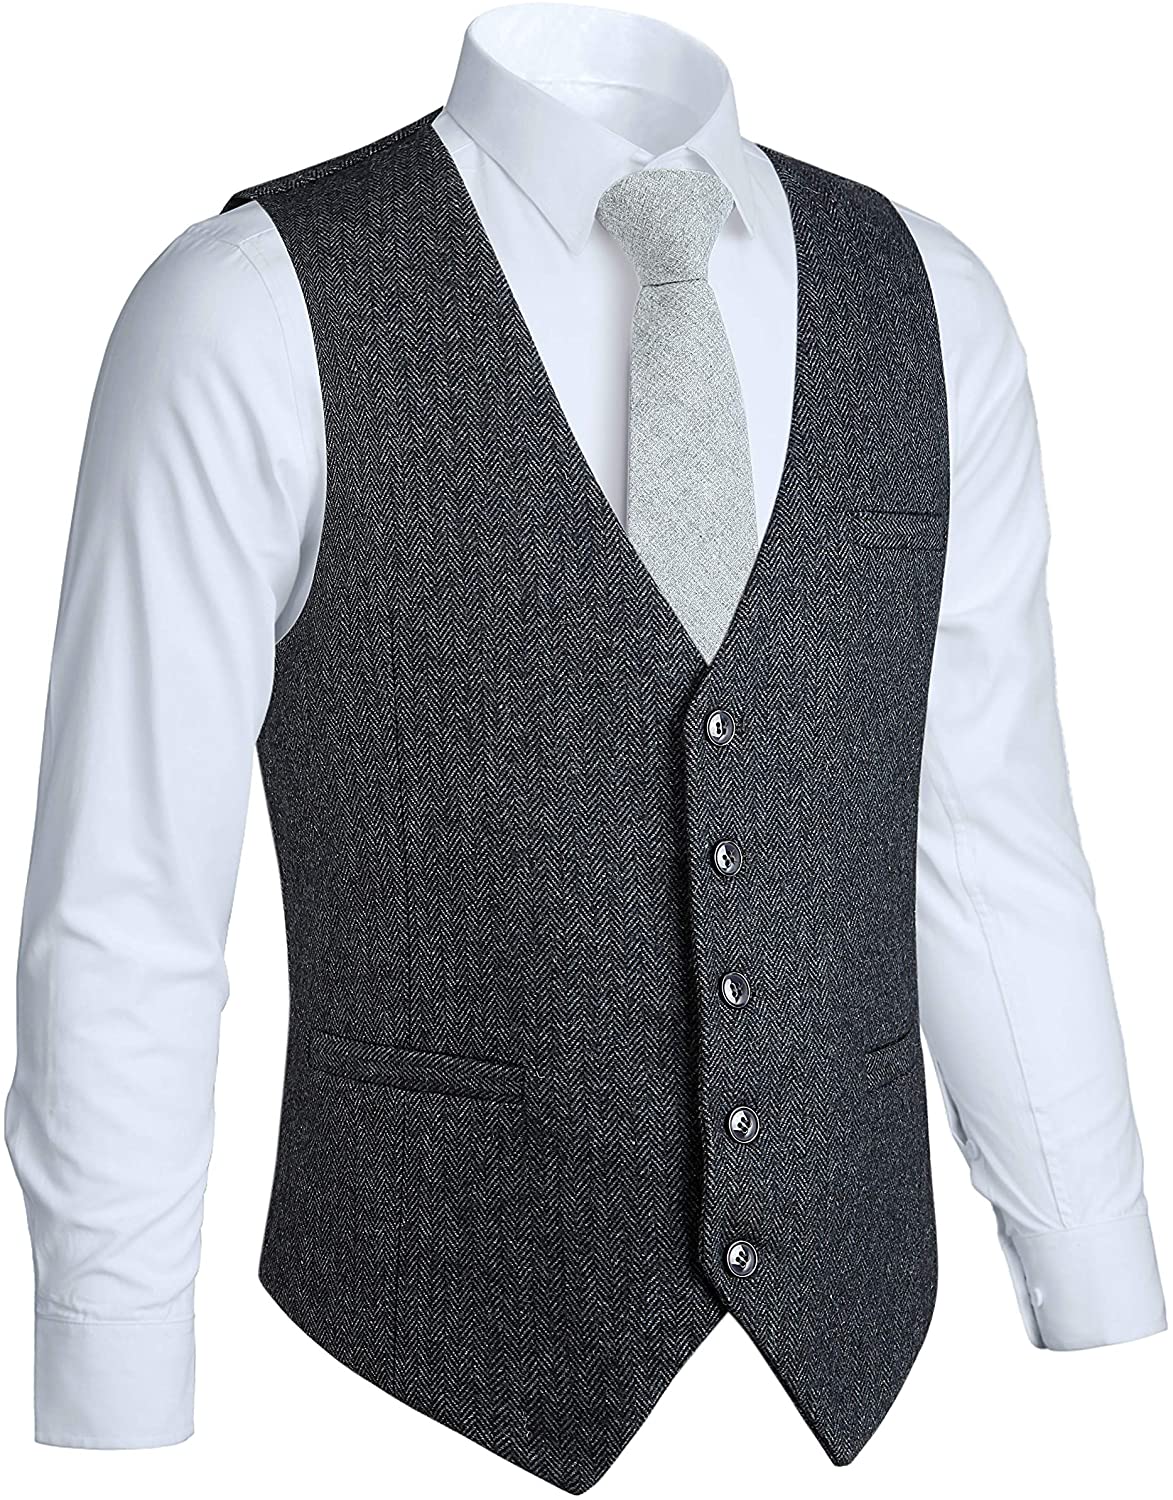 HISDERN Mens Herringbone Tweed Vest 5 Buttons Slim Fit Premium Wool ...